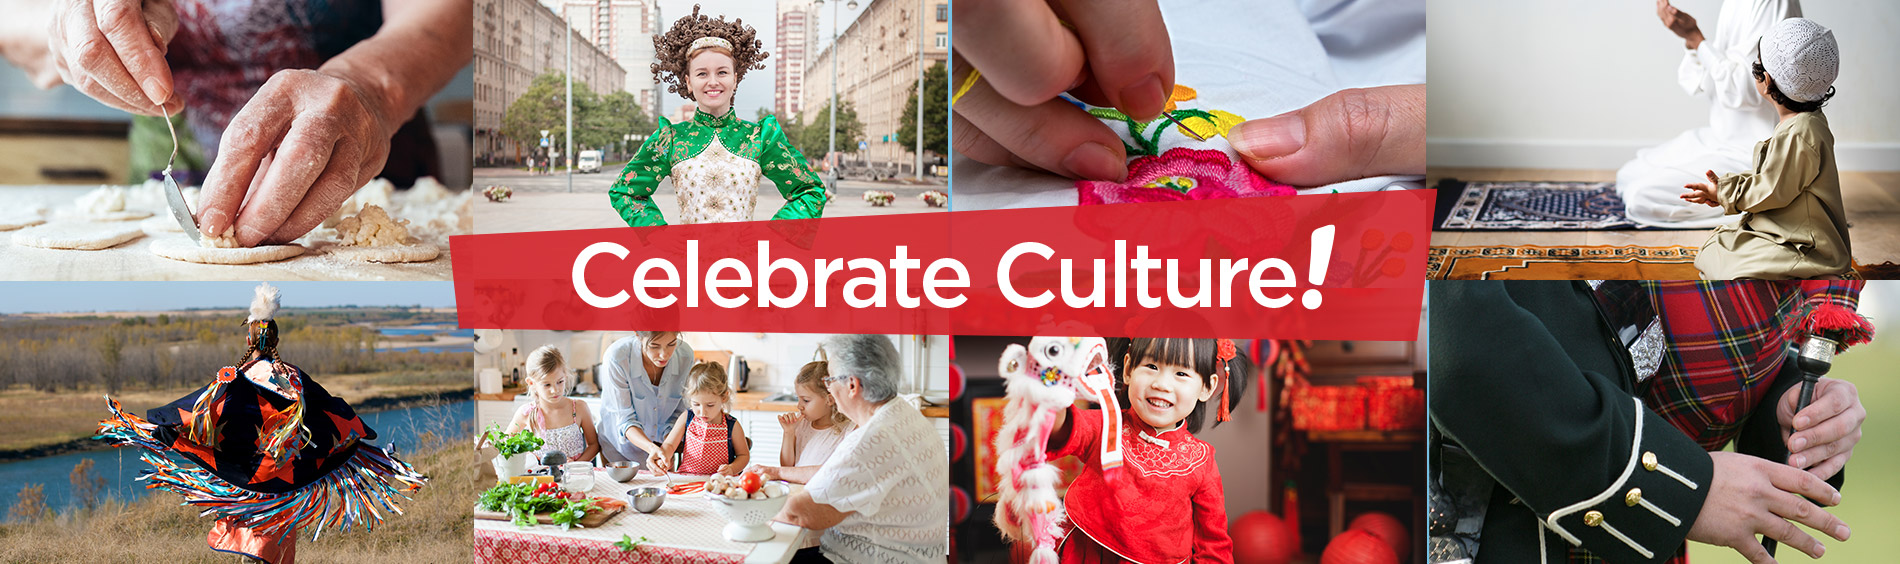 Healthy Kids Celebrate Culture